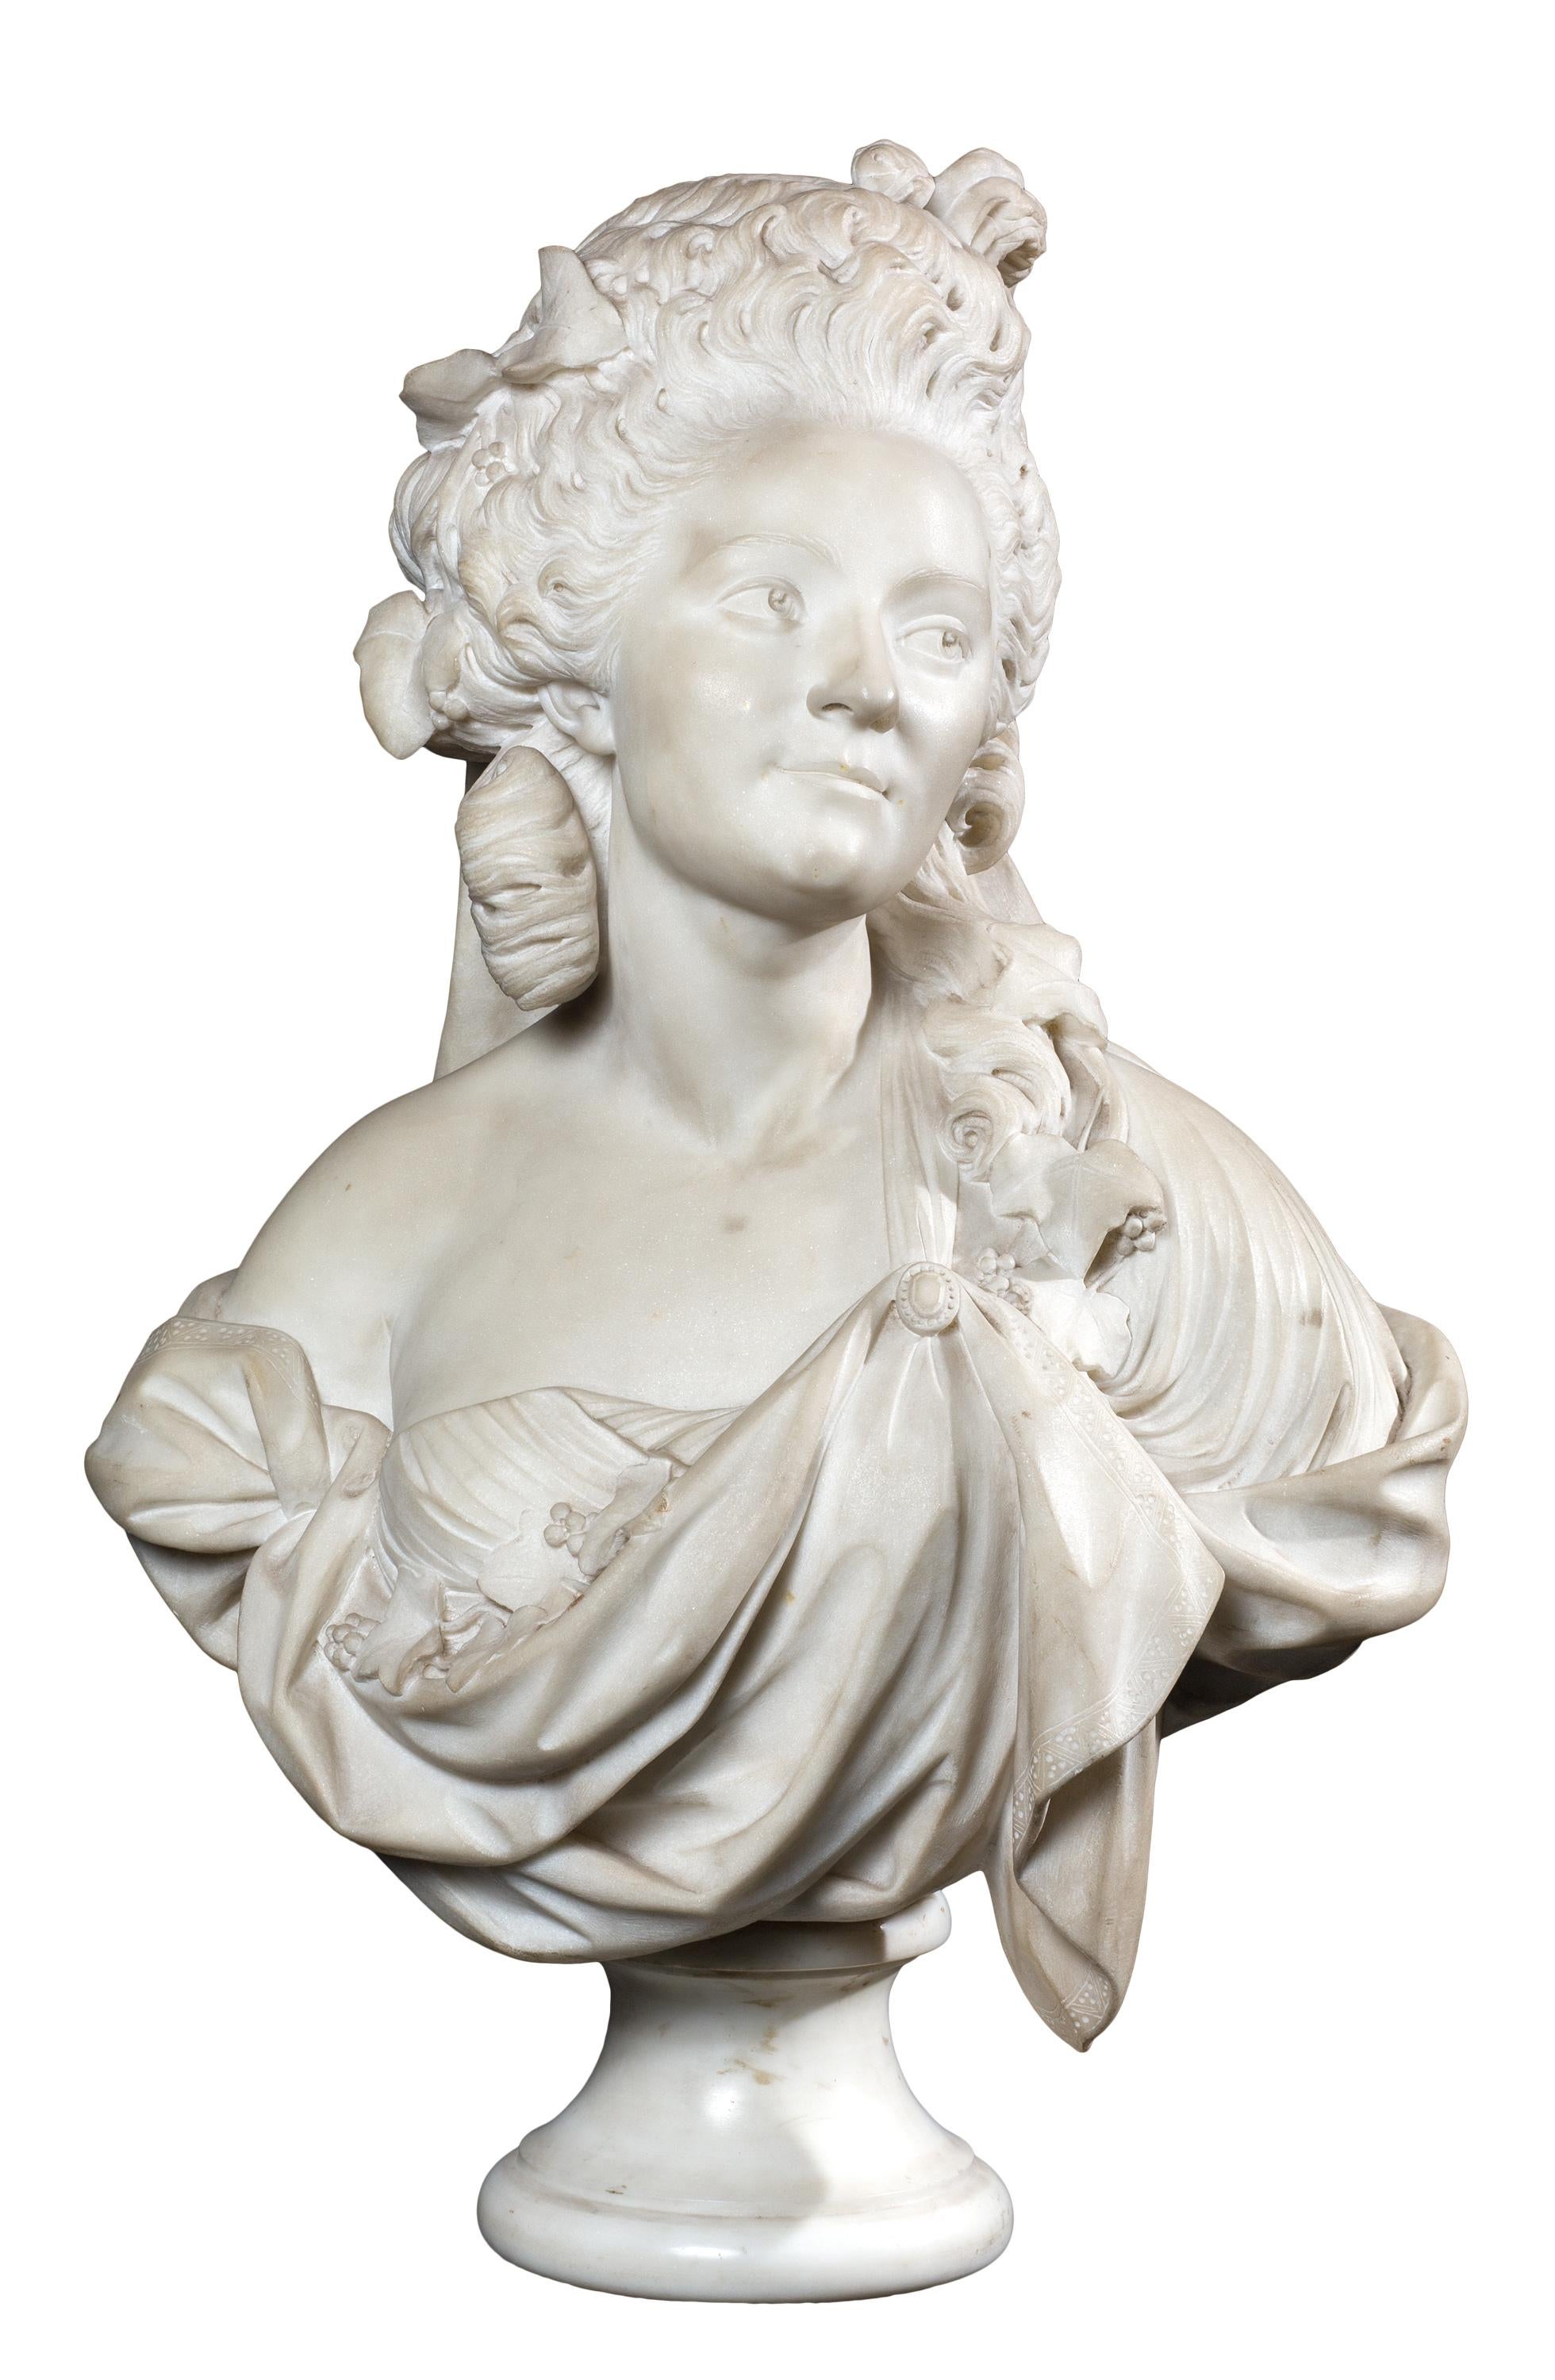 Ce buste expressif en marbre du XVIIIe siècle représente Marie-Madeleine Guimard (1743-1816), une danseuse à succès et l'une des plus célèbres courtisanes de la France d'avant la Révolution. Le buste n'est pas signé, mais il est identique à un buste